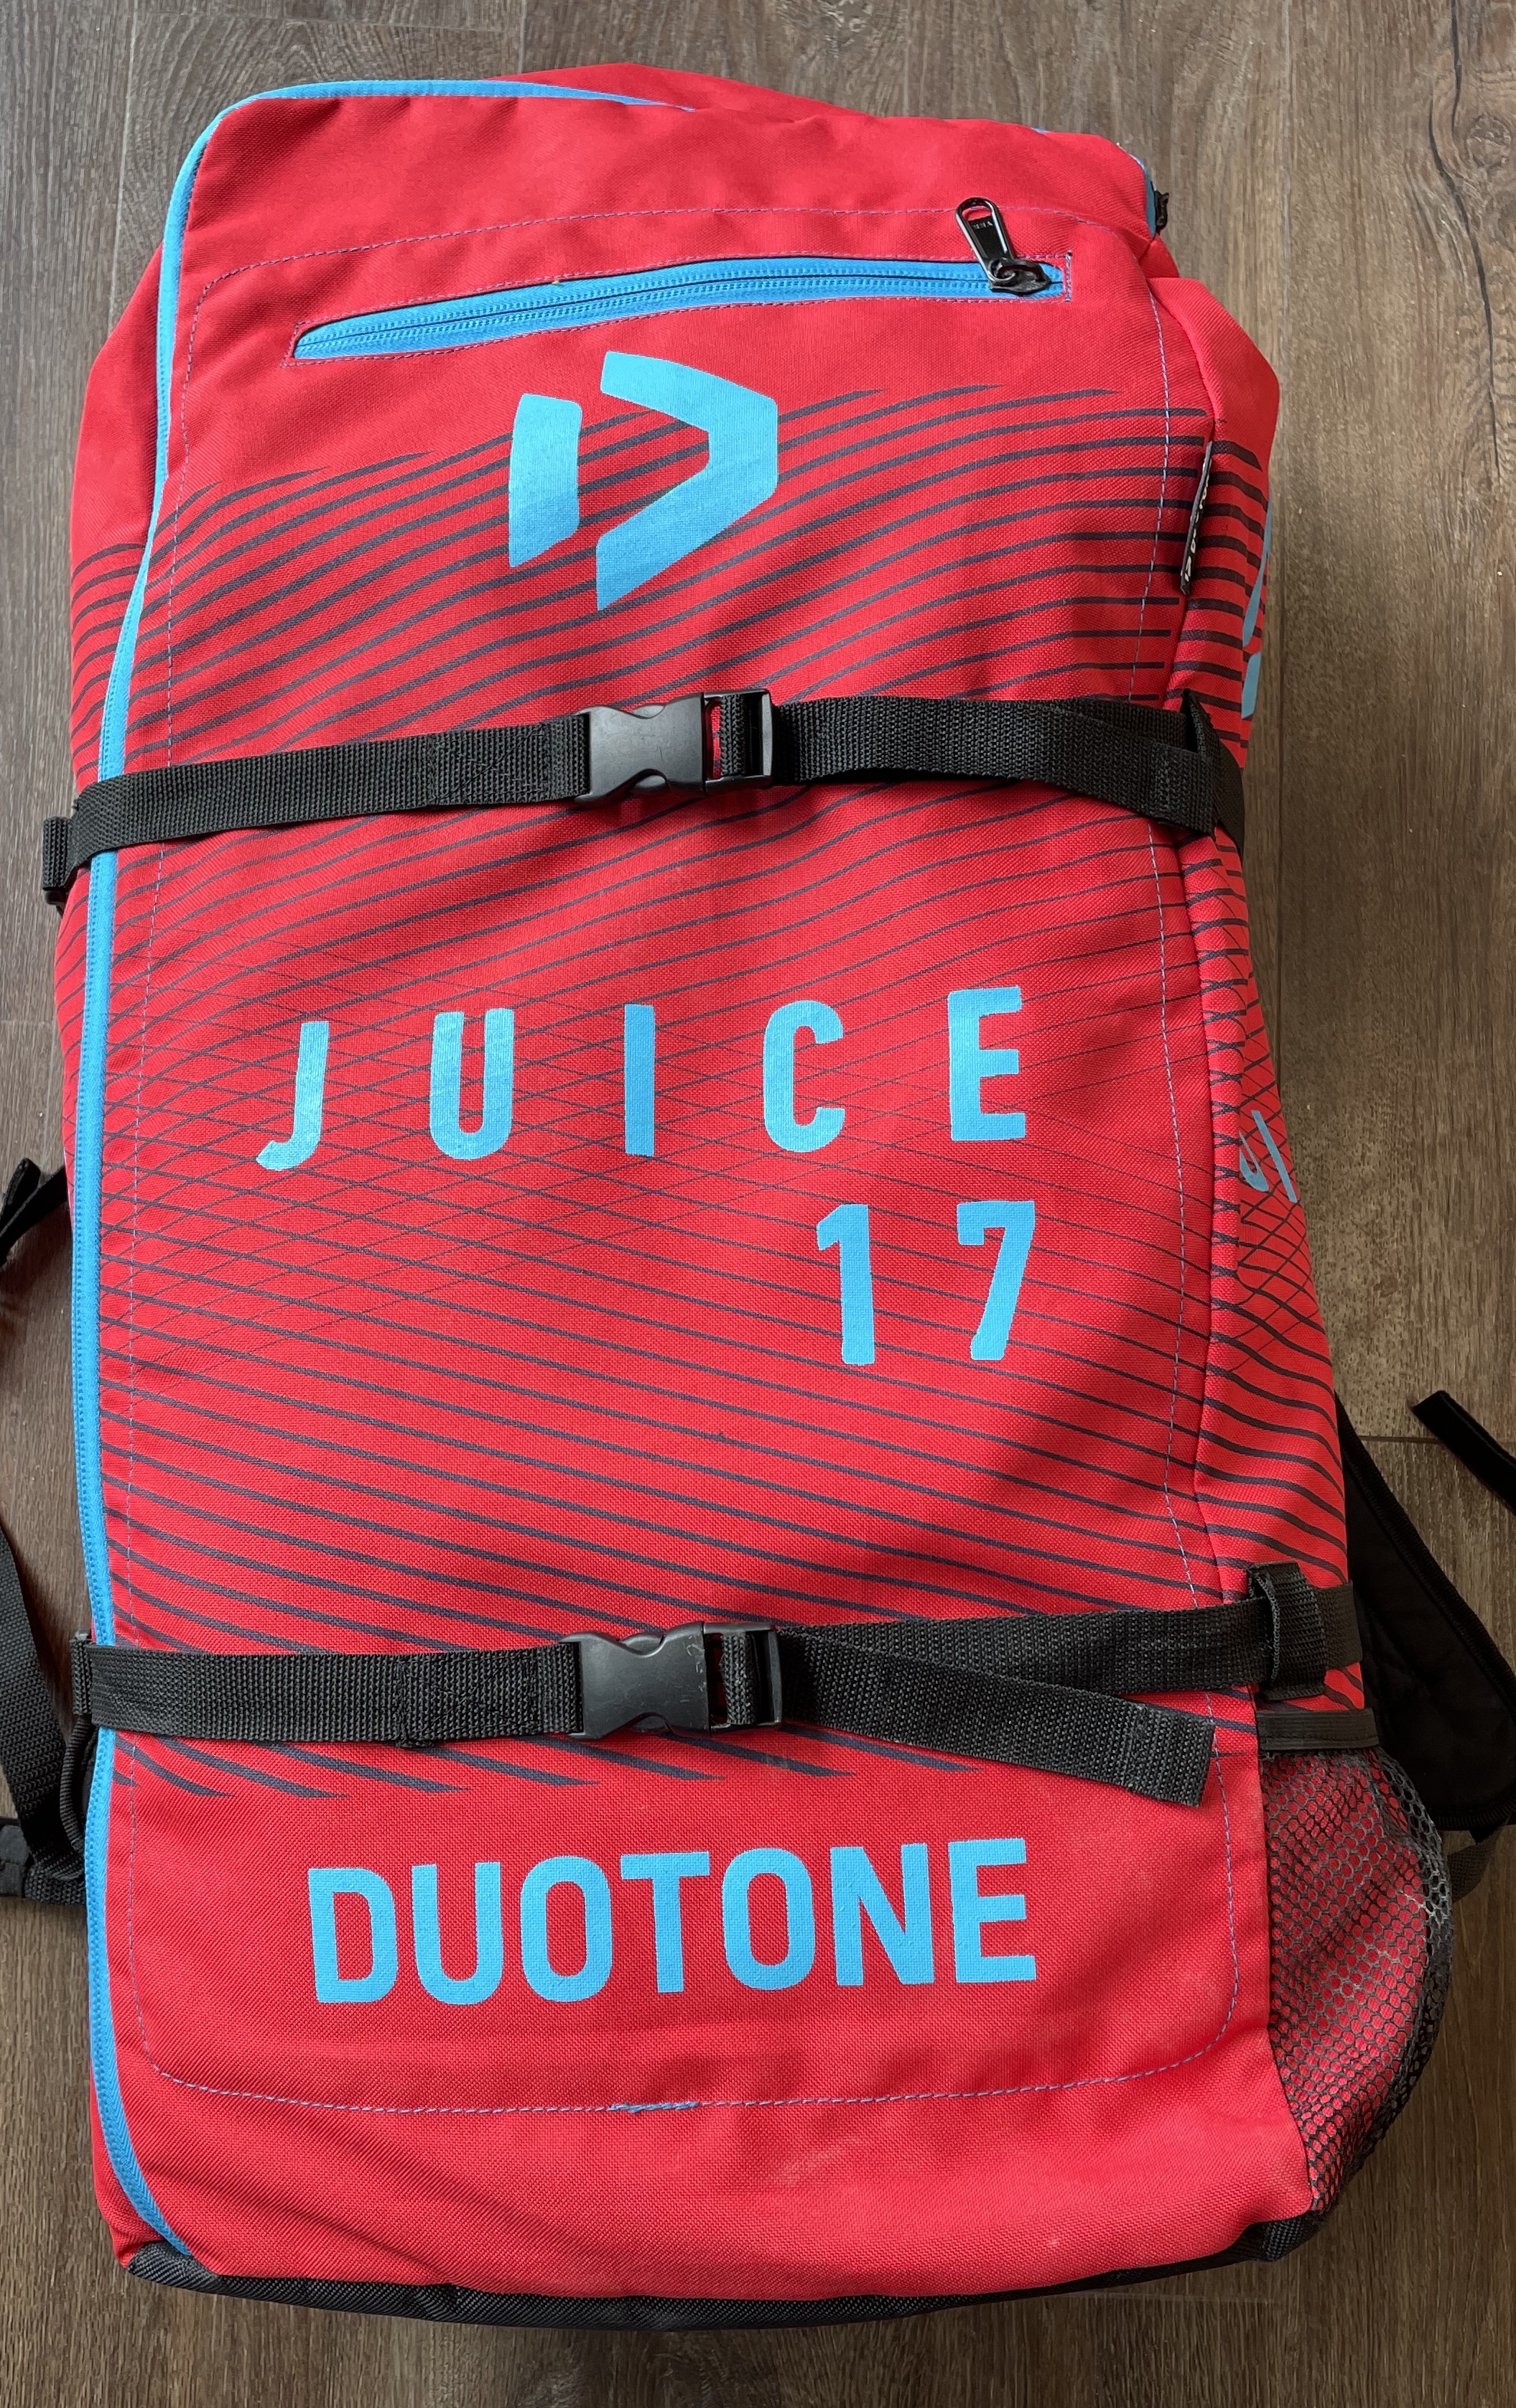 Duotone Juice 17m 2019